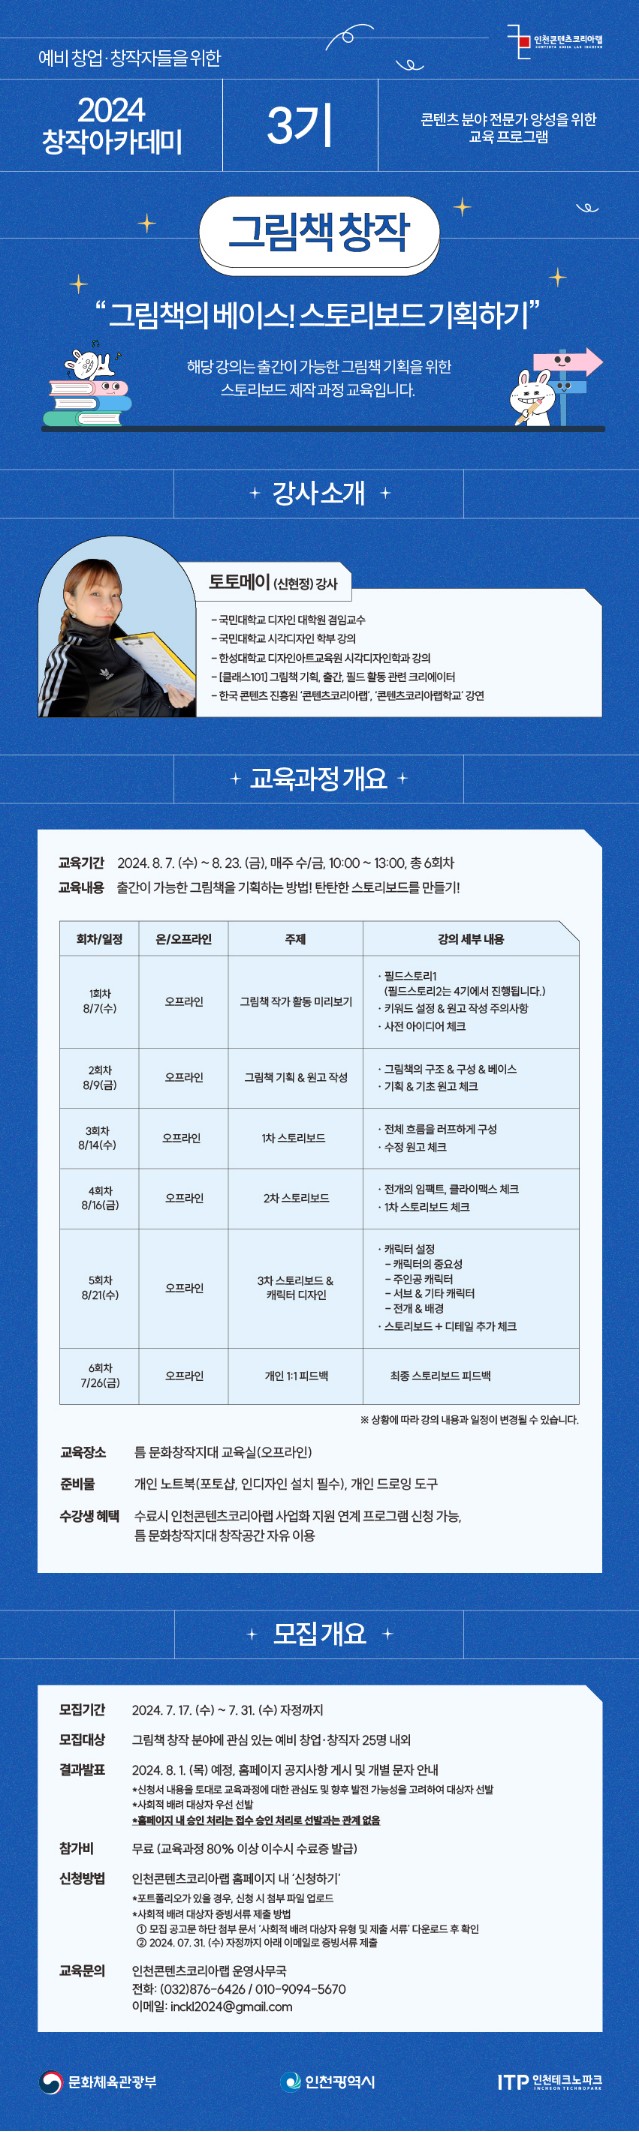 인천콘텐츠코리아랩 '2024 창작 아카데미 3기 - 그림책 창작 과정' 수강생 모집